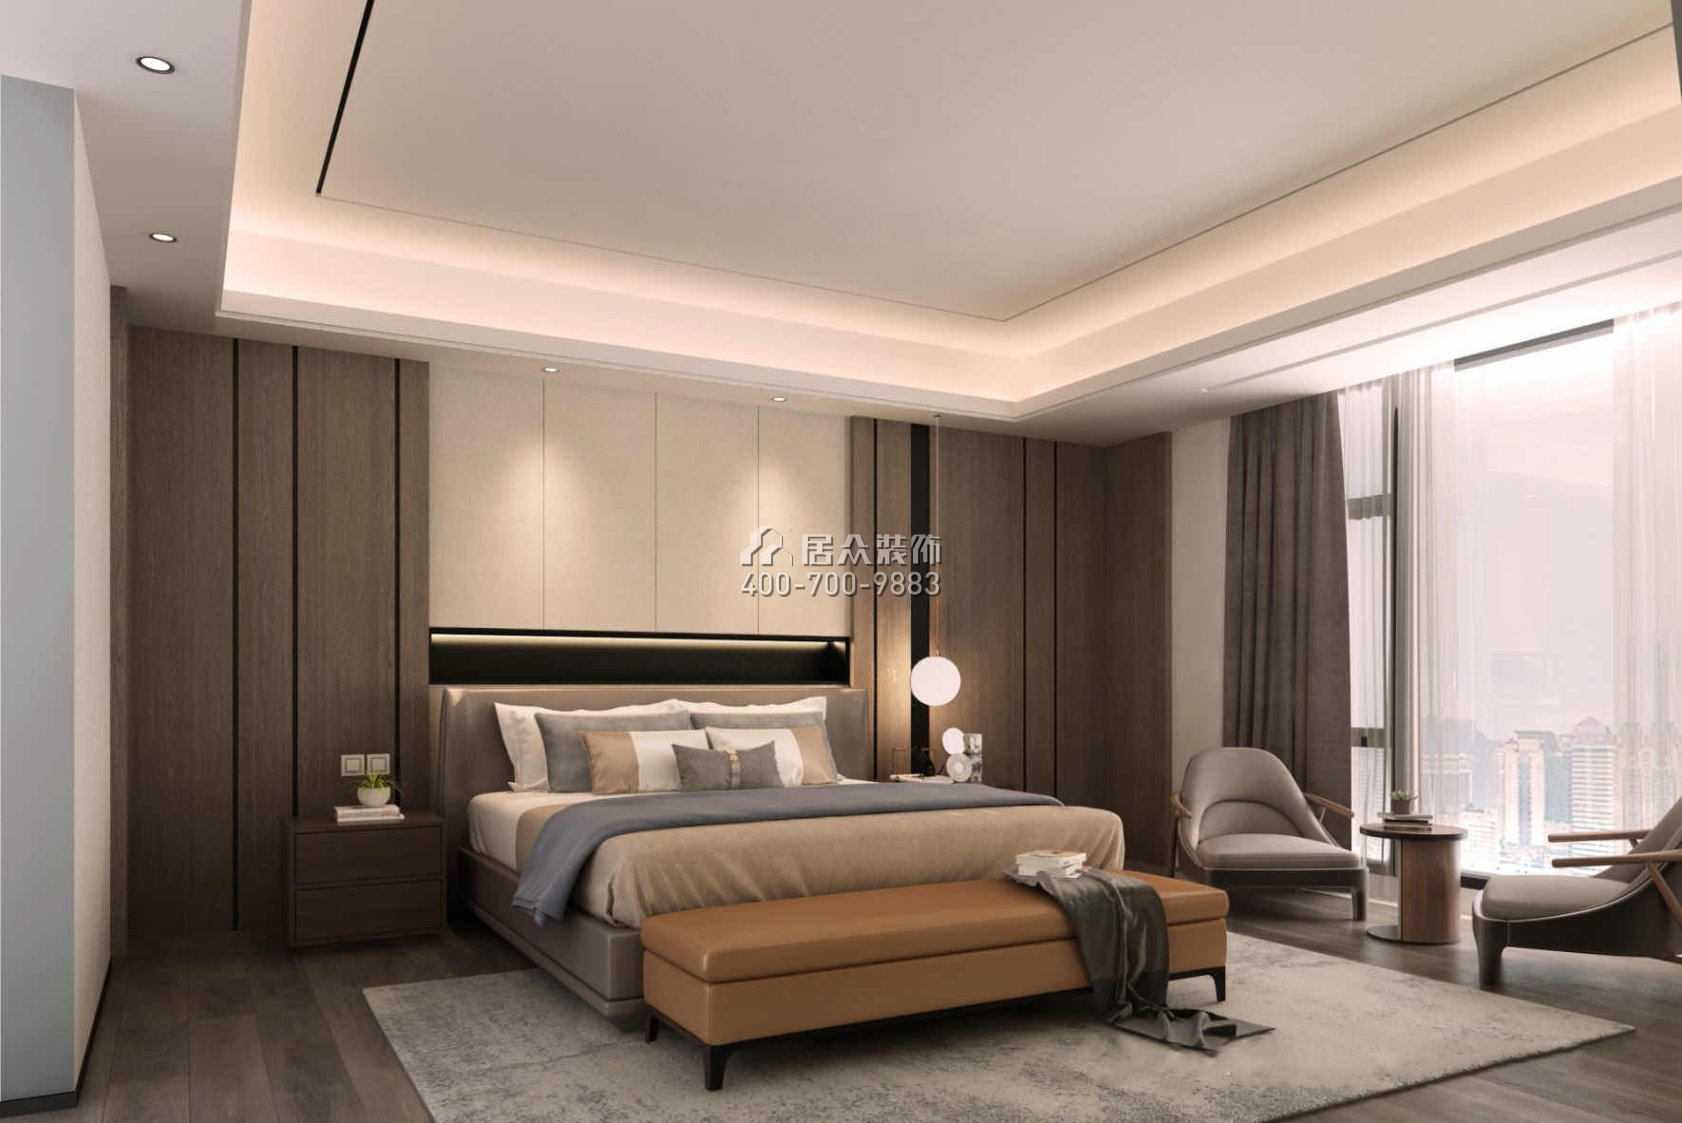 香山美墅五期171平方米中式风格平层户型卧室装修效果图